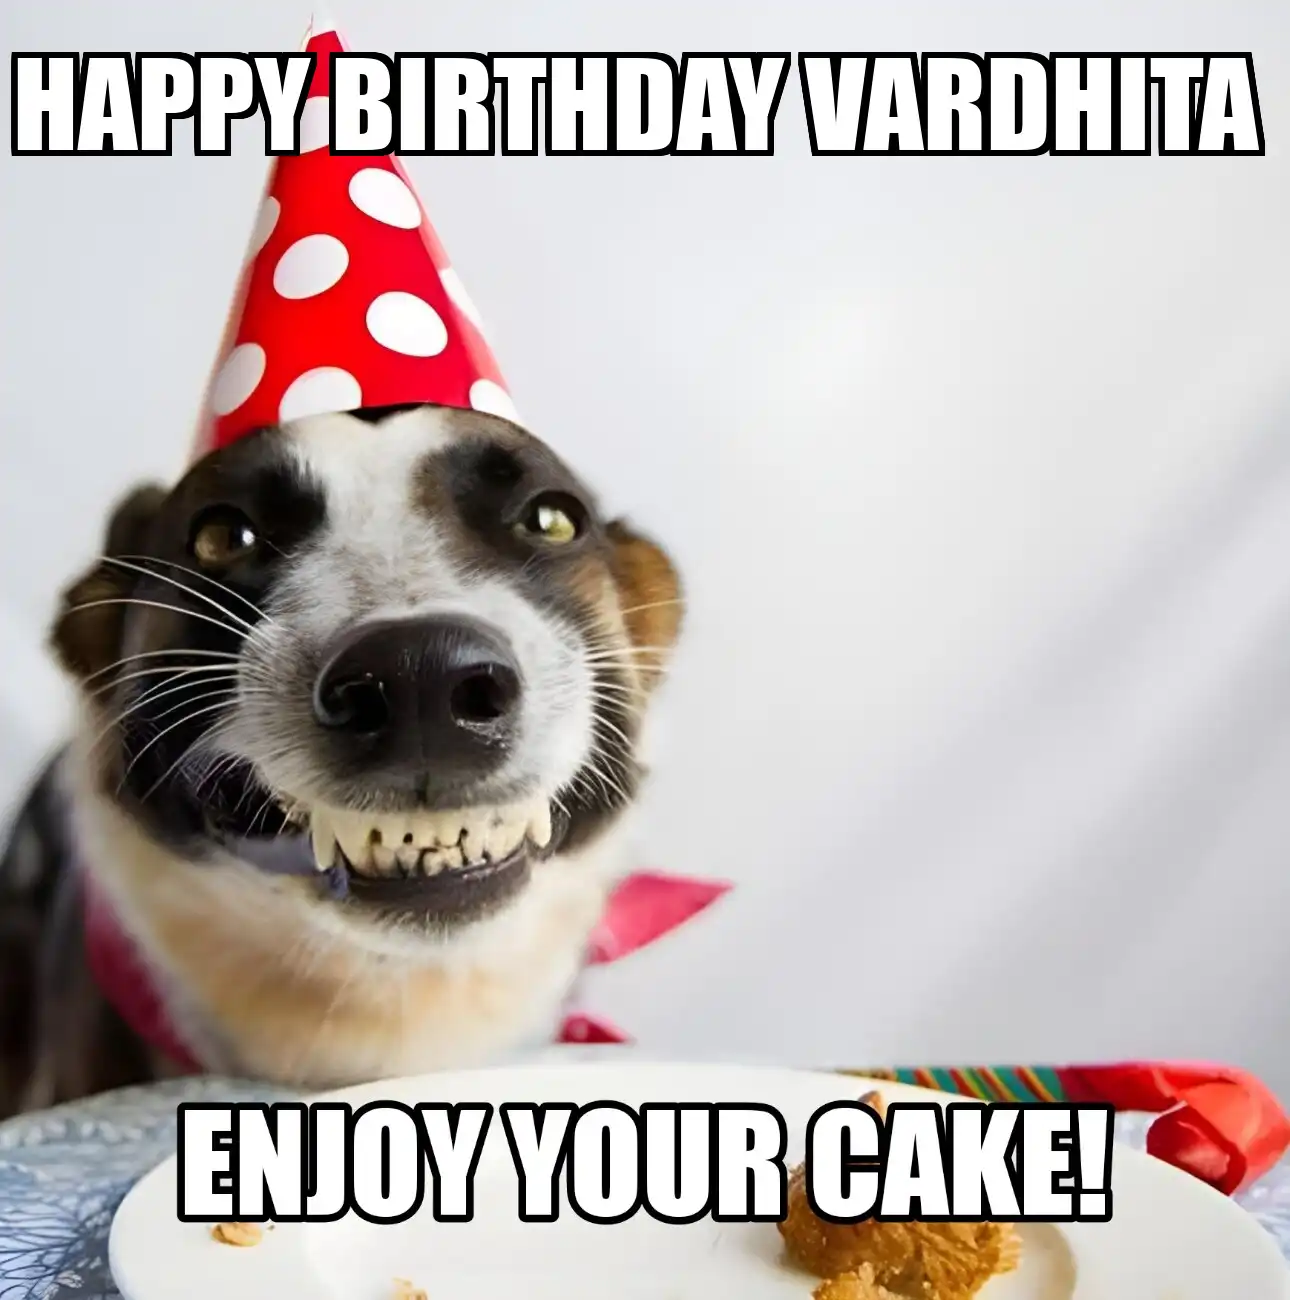 Happy Birthday Vardhita Enjoy Your Cake Dog Meme